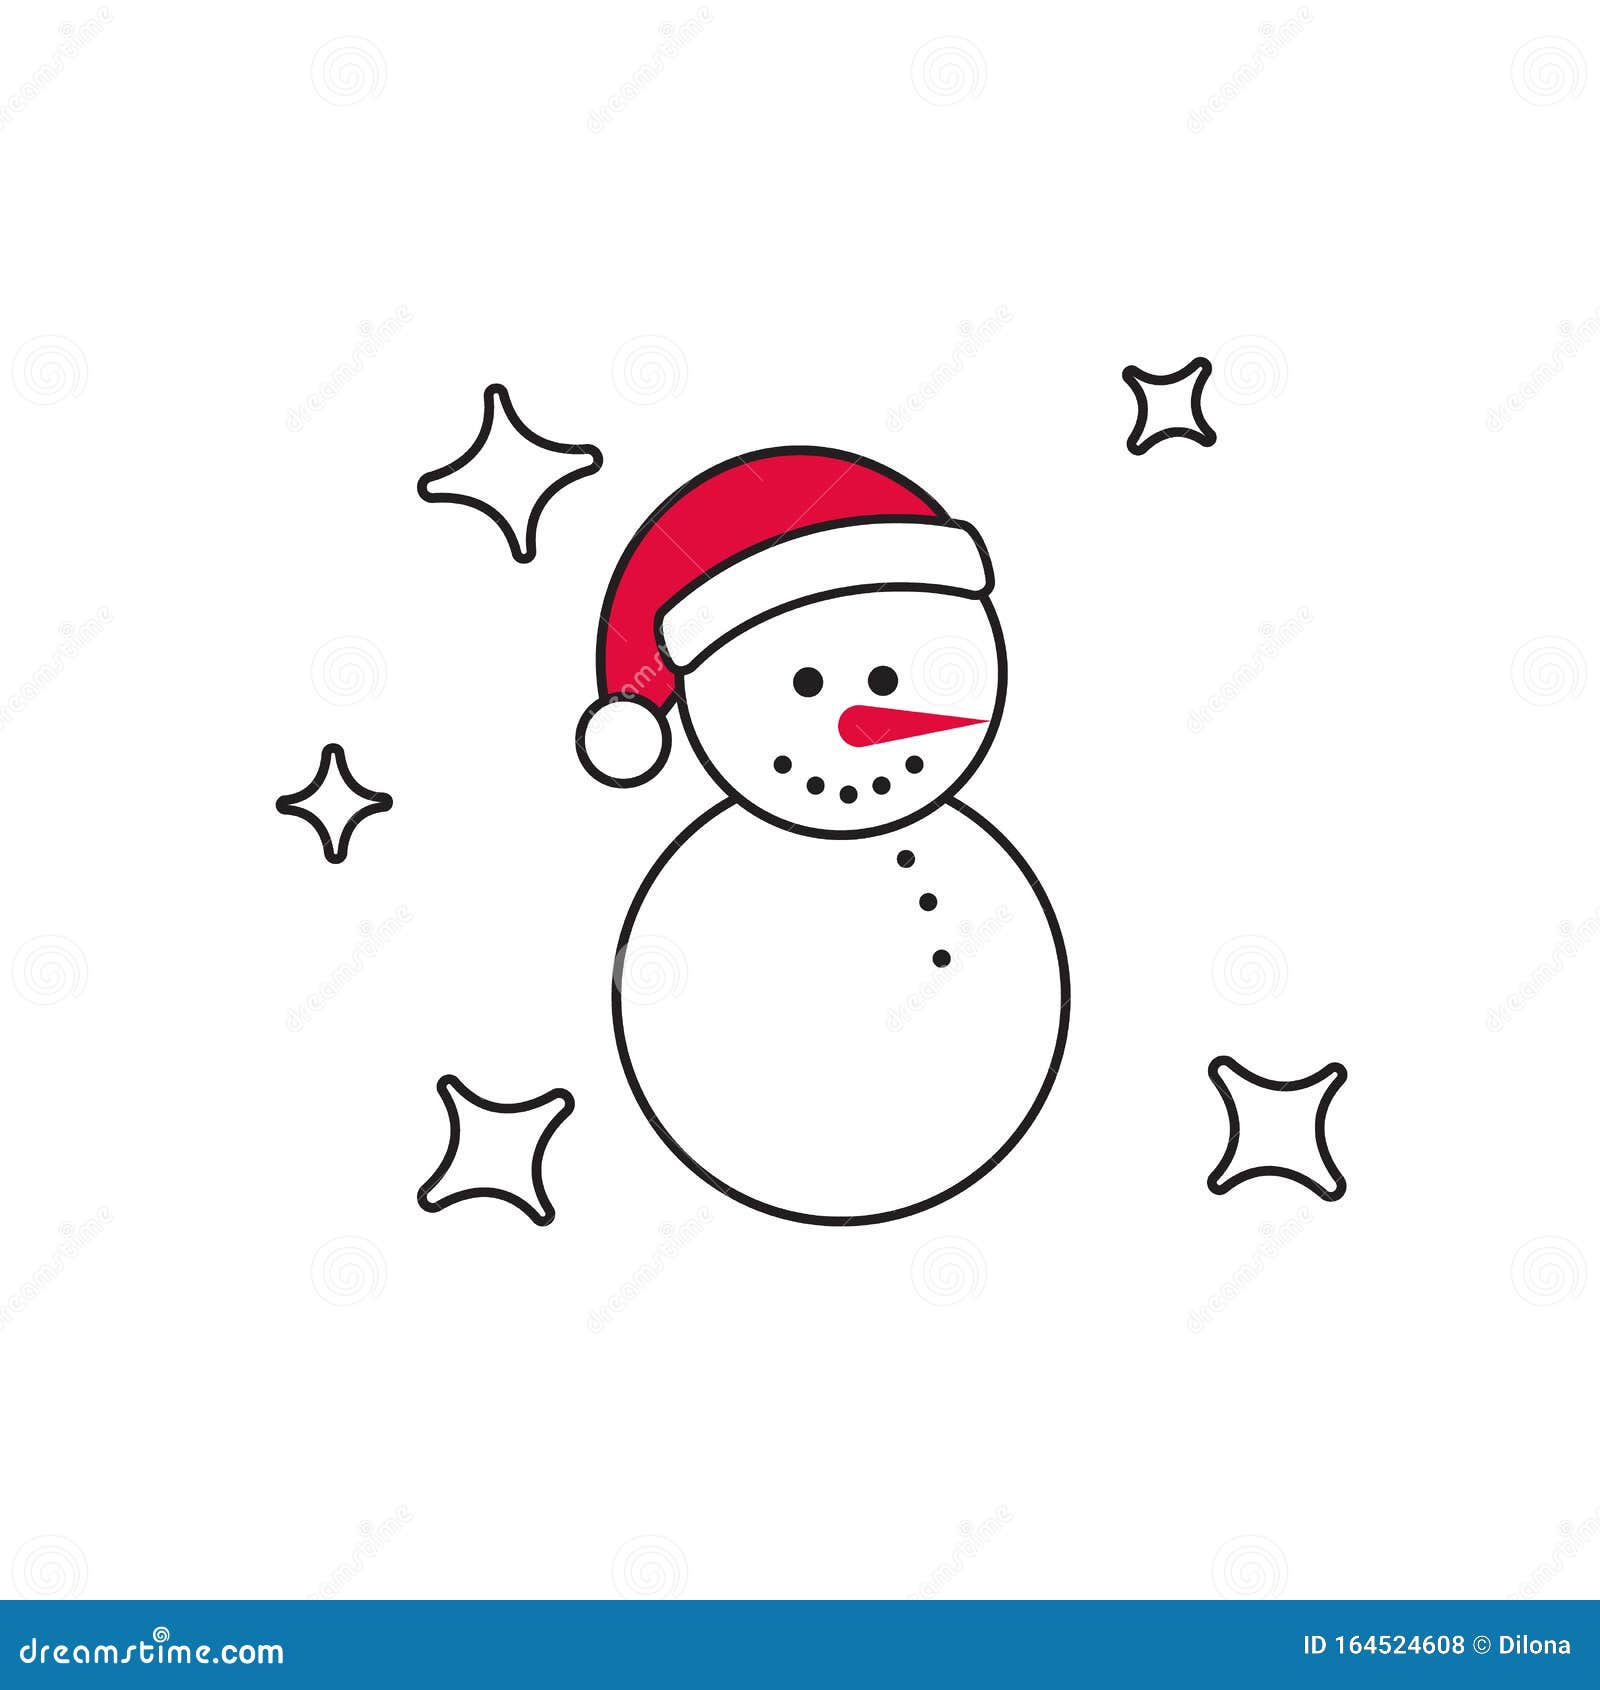 Svart snögubbe med en tomhatt isolerad på vit bakgrund Designelement för jul och nyår Vintersymbol. Svart snögubbe med tomatisk hatt, scarf och mittensidor isolerade på grå bakgrund Designelement för jul och nyår Vintersymbol Ikonen för snöstråd